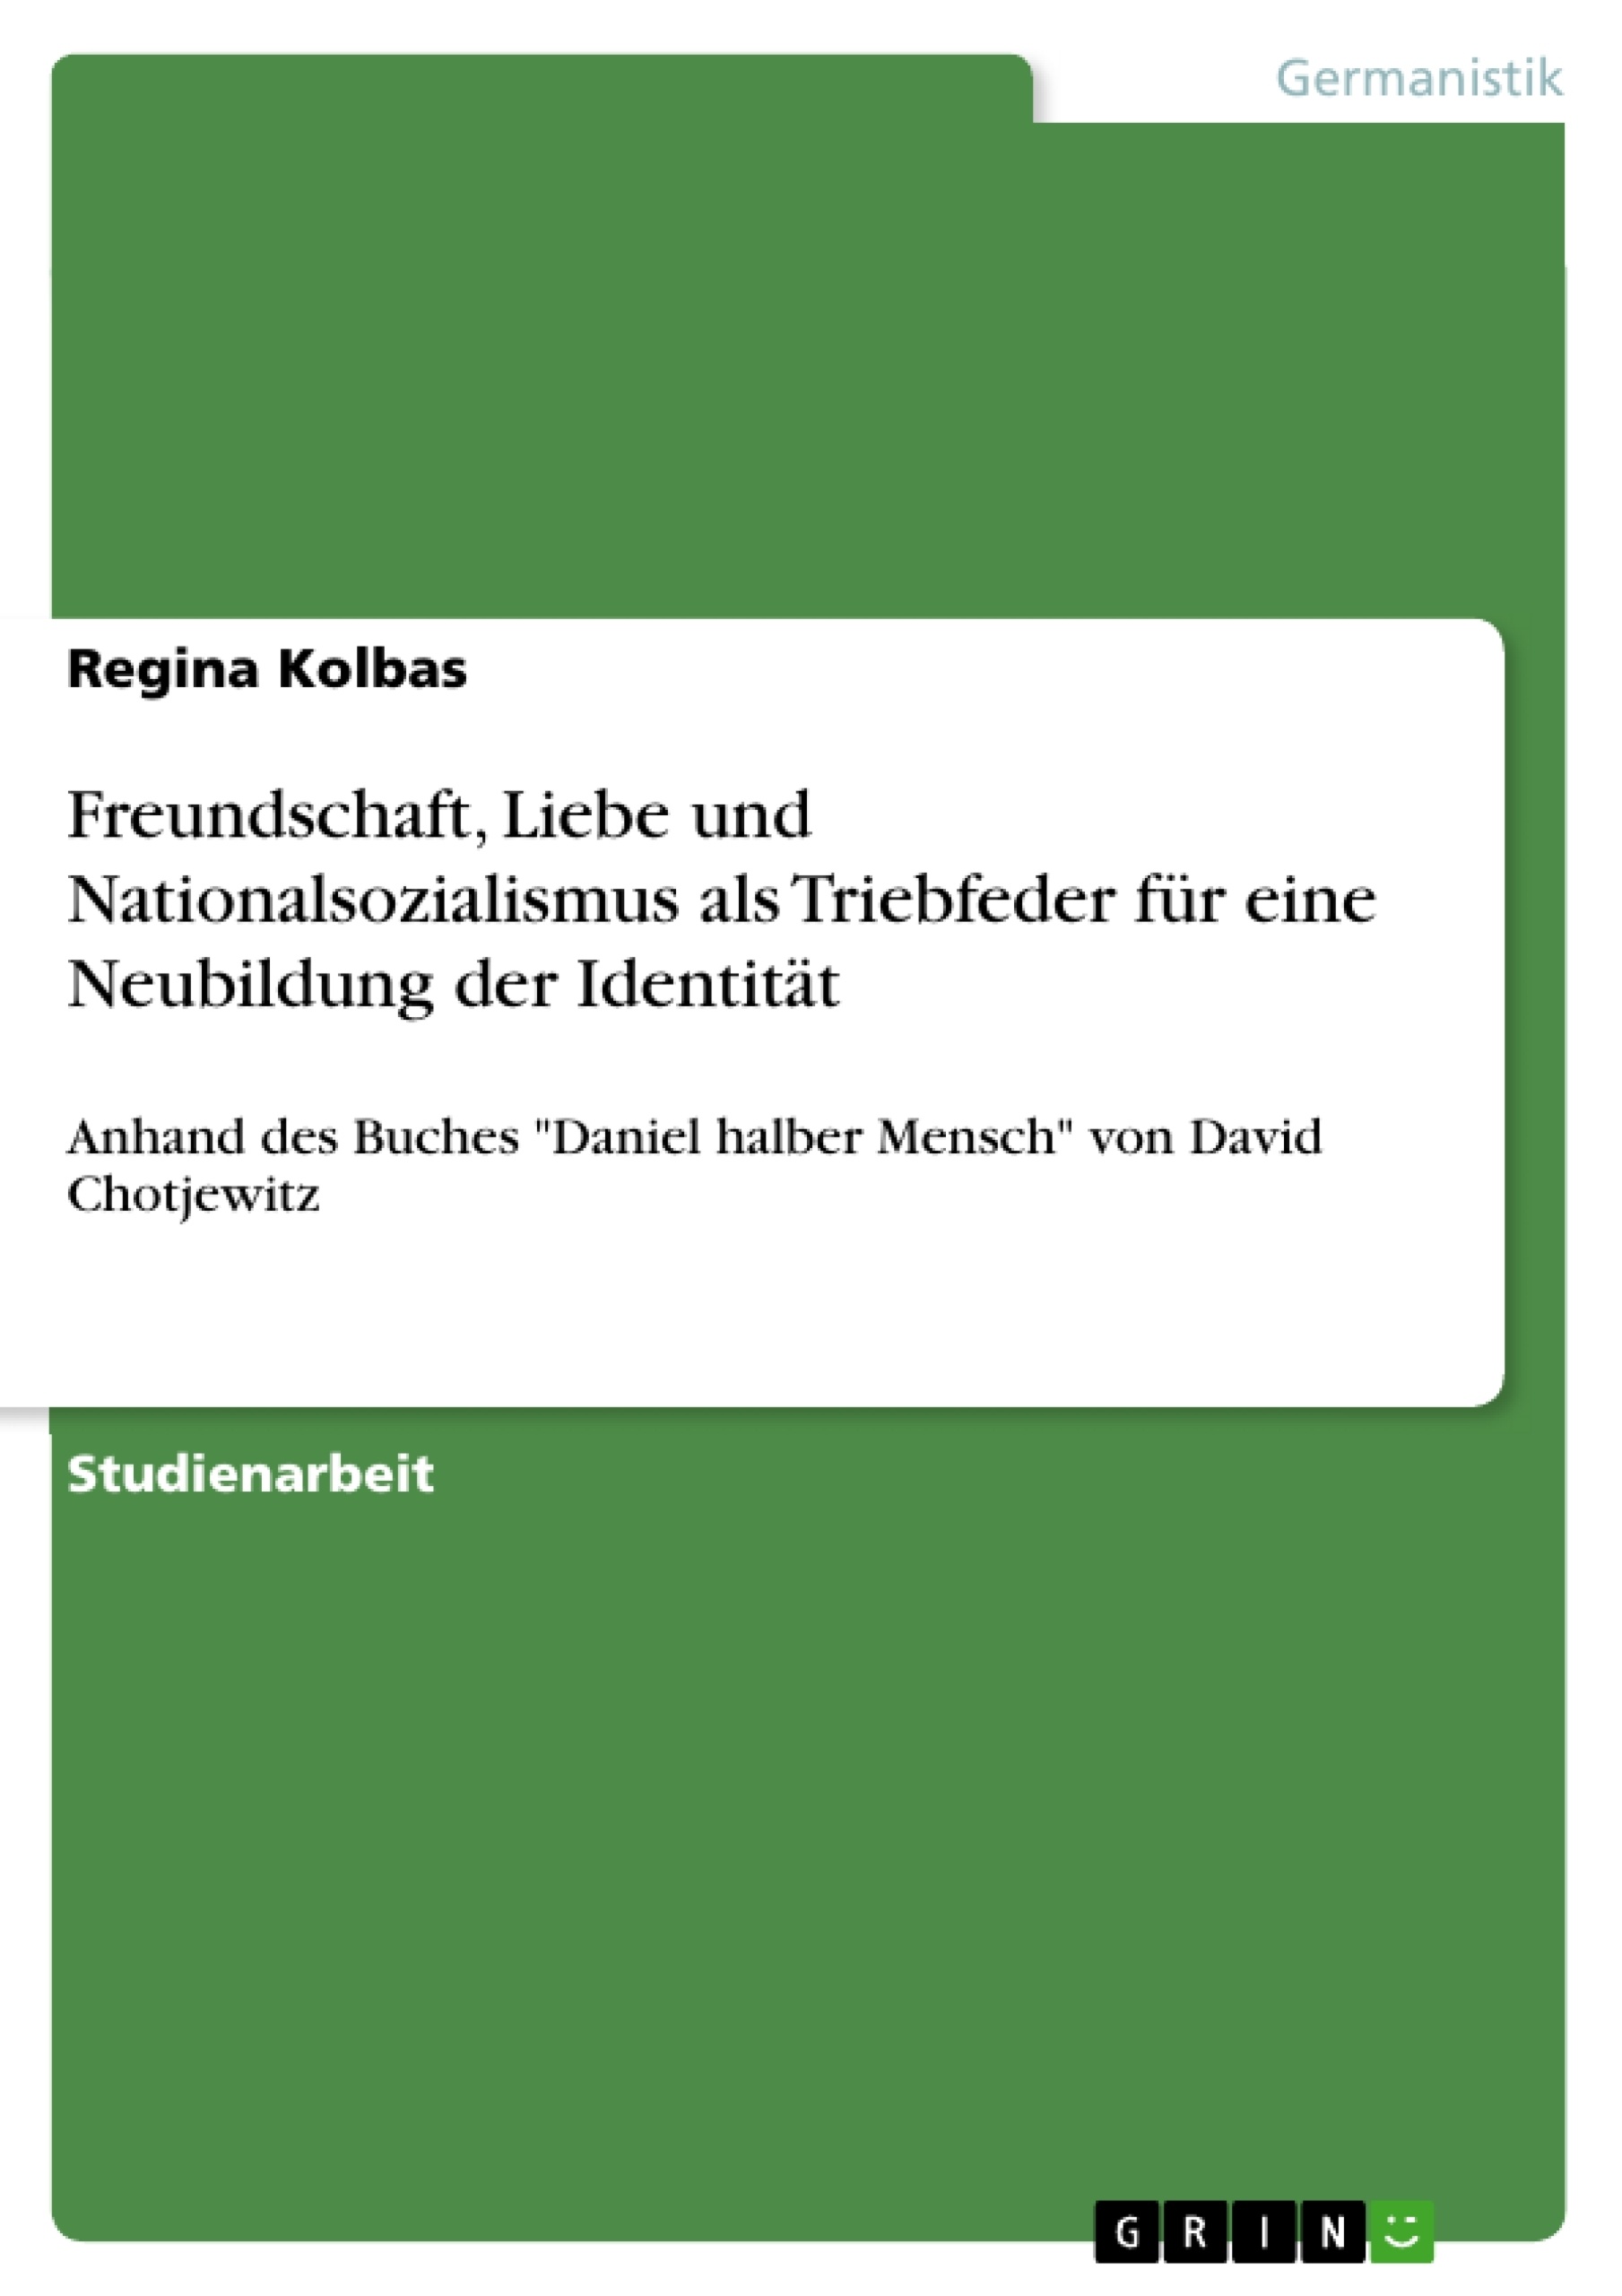 Title: Freundschaft, Liebe und Nationalsozialismus als Triebfeder für eine Neubildung der Identität